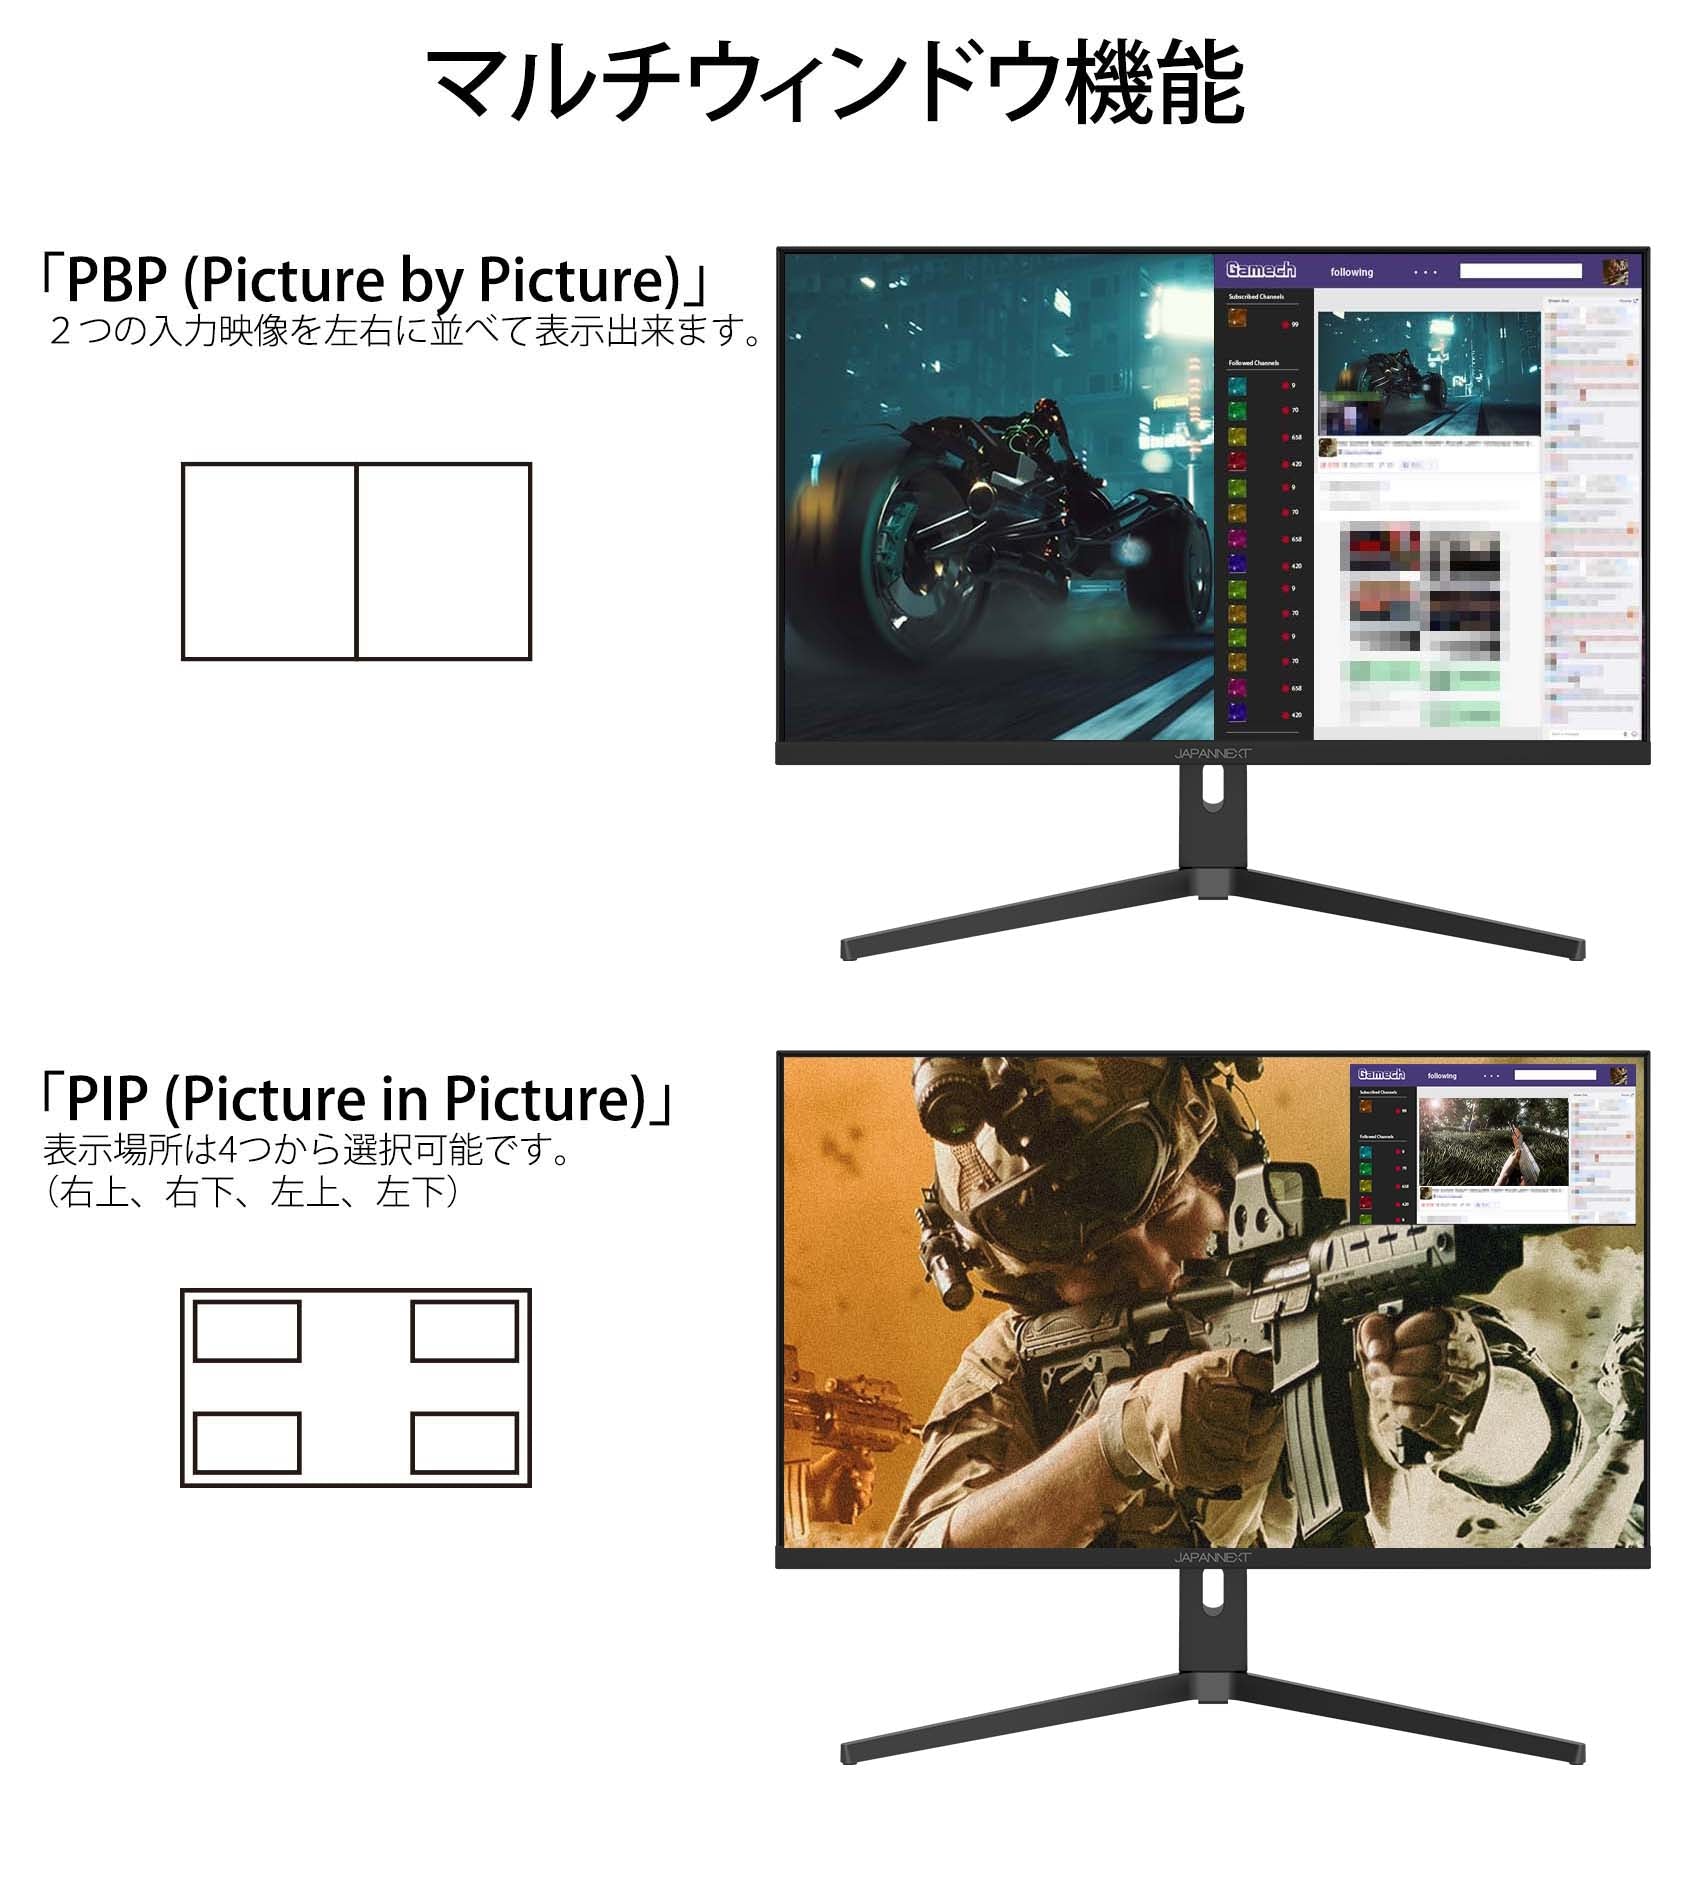 購入 品 ブログ JAPANNEXT HDMI 2.1対応 31.5型 144Hz対応４Kゲーミングモニター JN-315IPS144UHDR-N  ディスプレイ